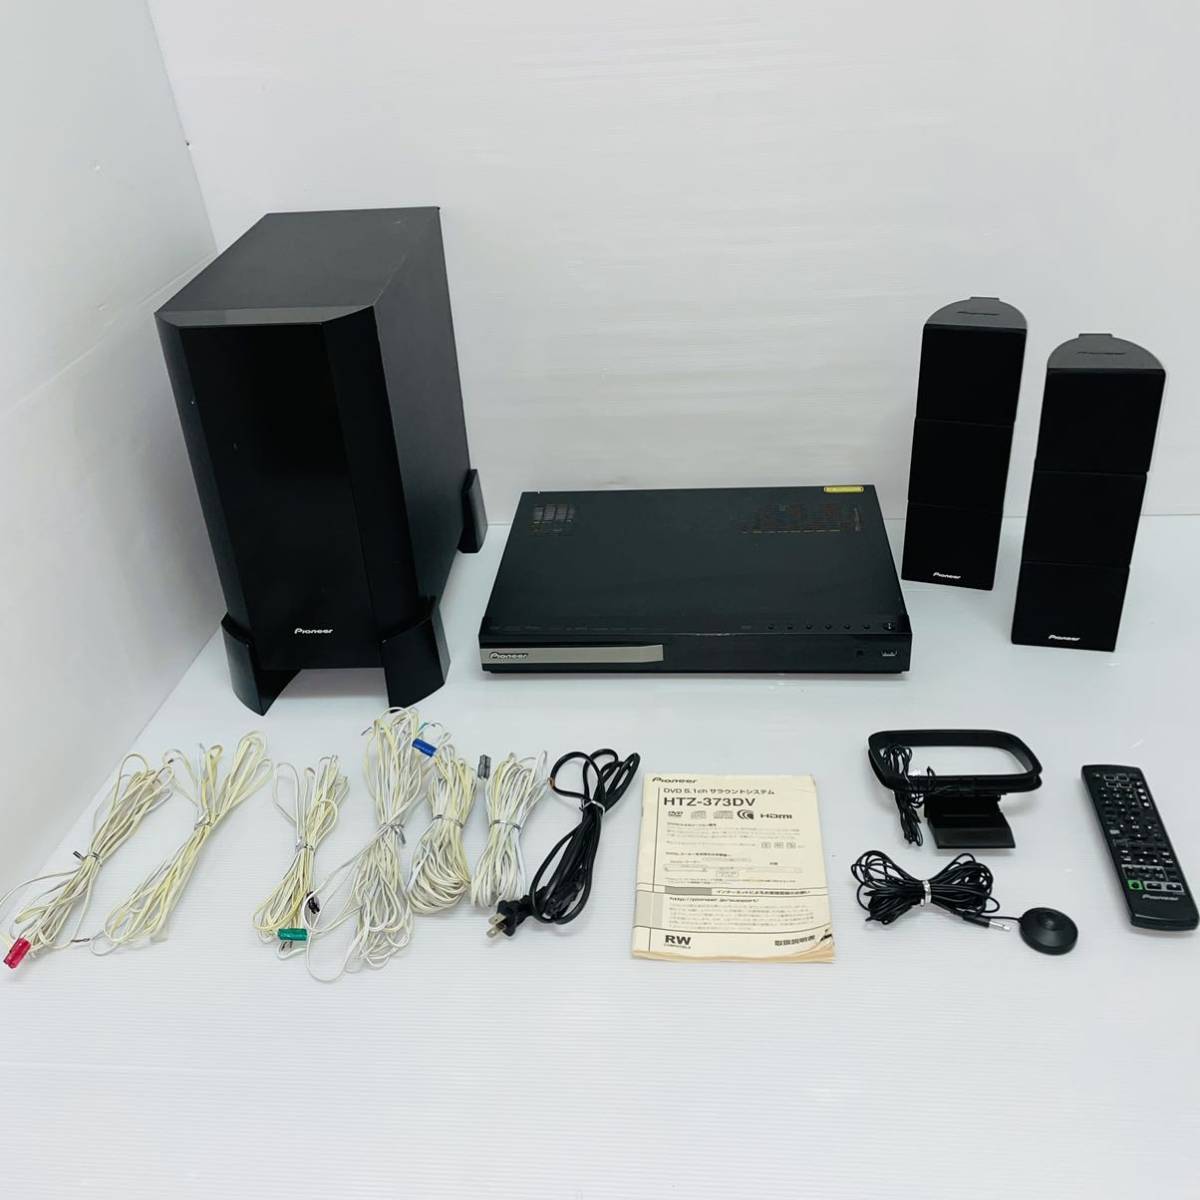 動作品 パイオニア DVD 5.1ch サラウンド システム HTZ-373DV